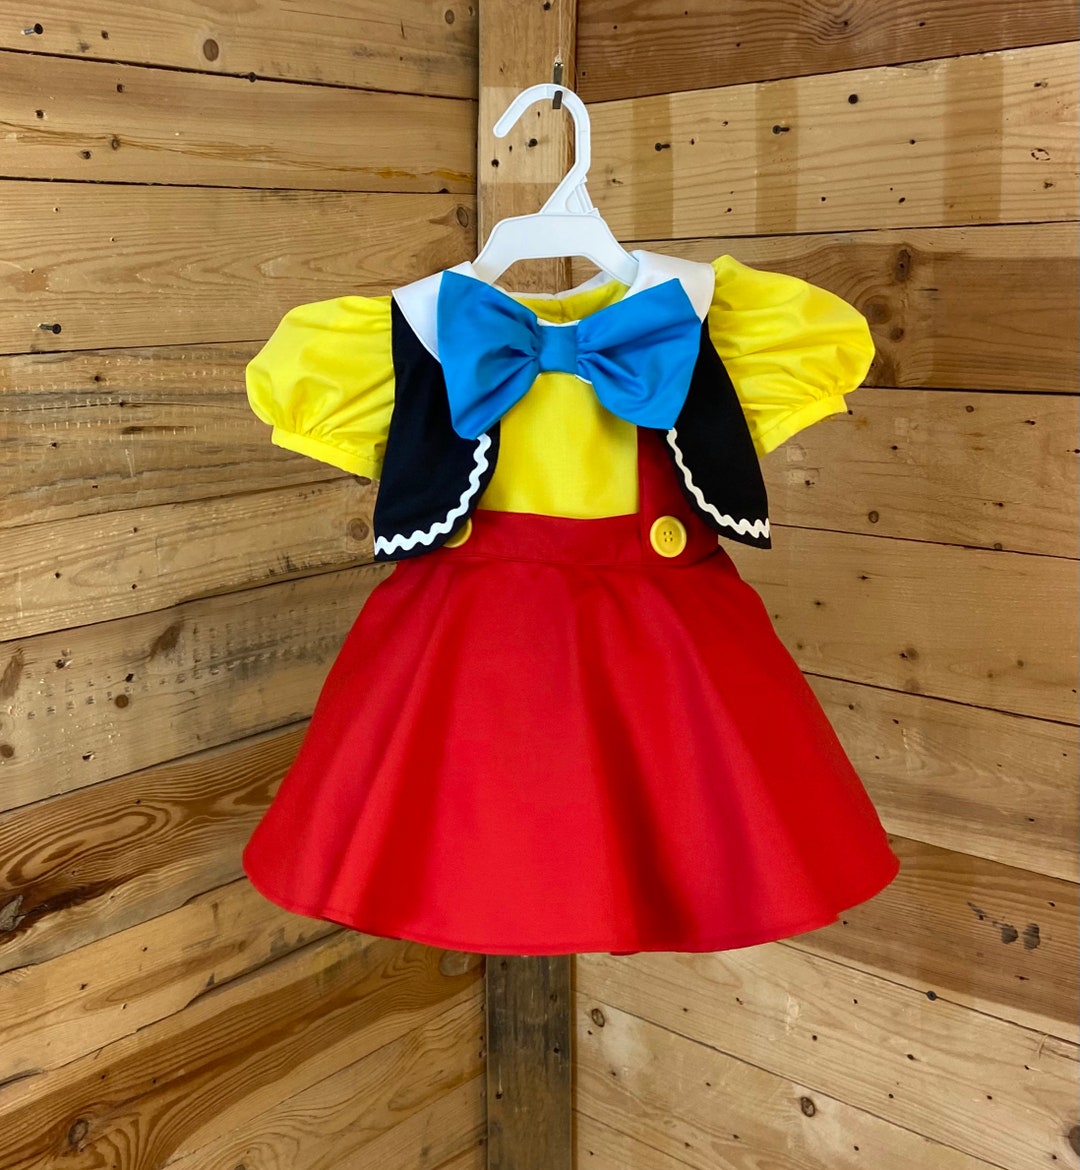 Pinocchio Baby Dress, Pinocchio Baby Costume. - Etsy